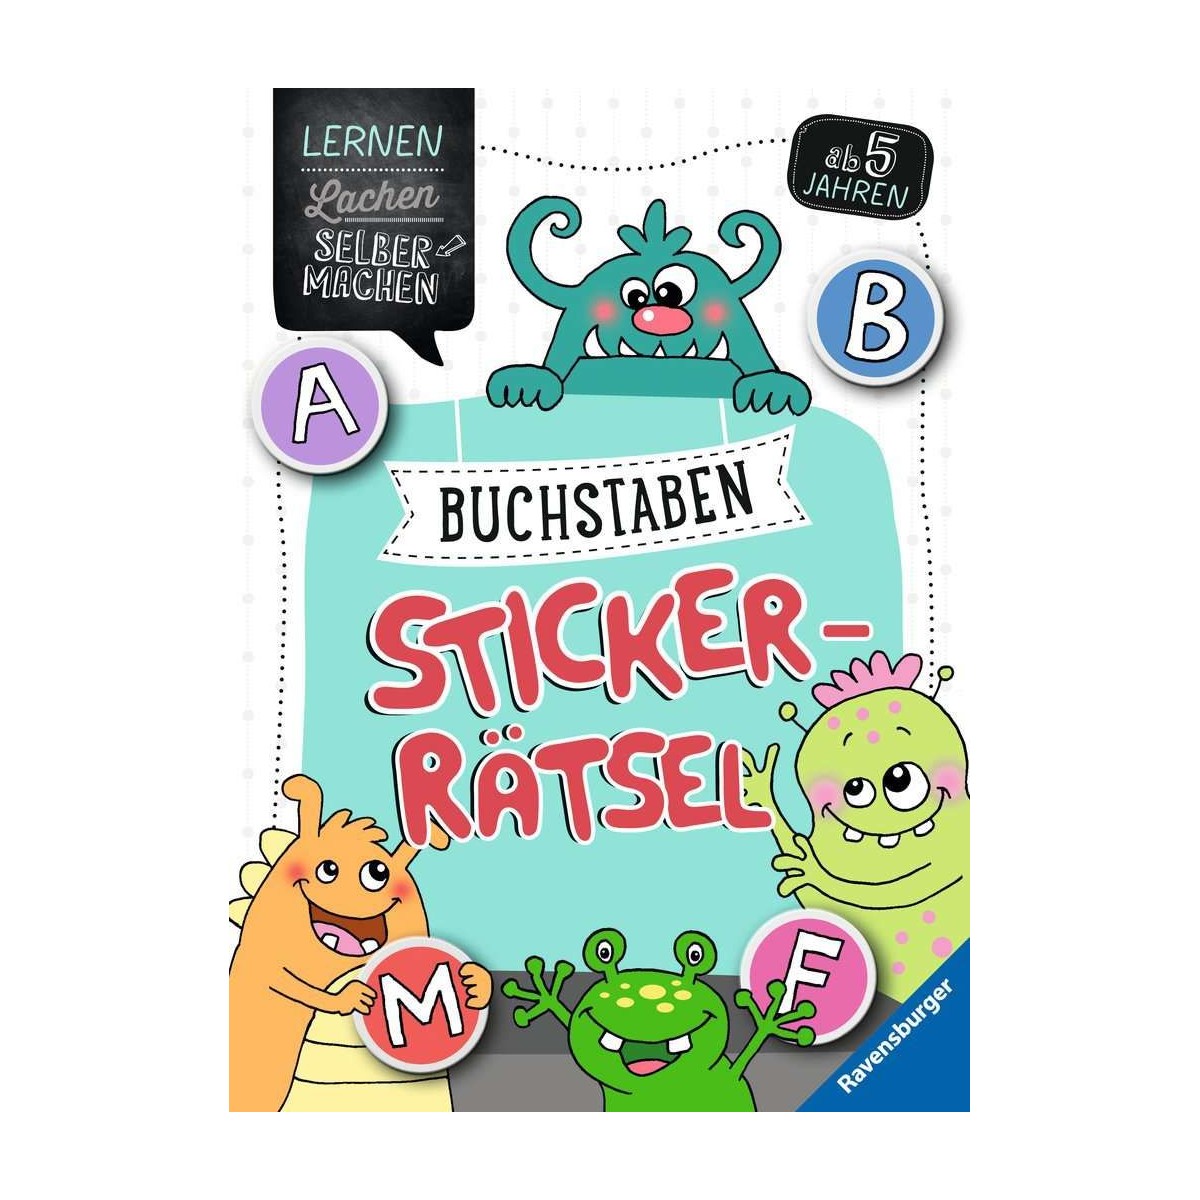 Ravensburger Buch - Lernen, Lachen, Selbermachen - Buchstaben-Sticker-Rätsel